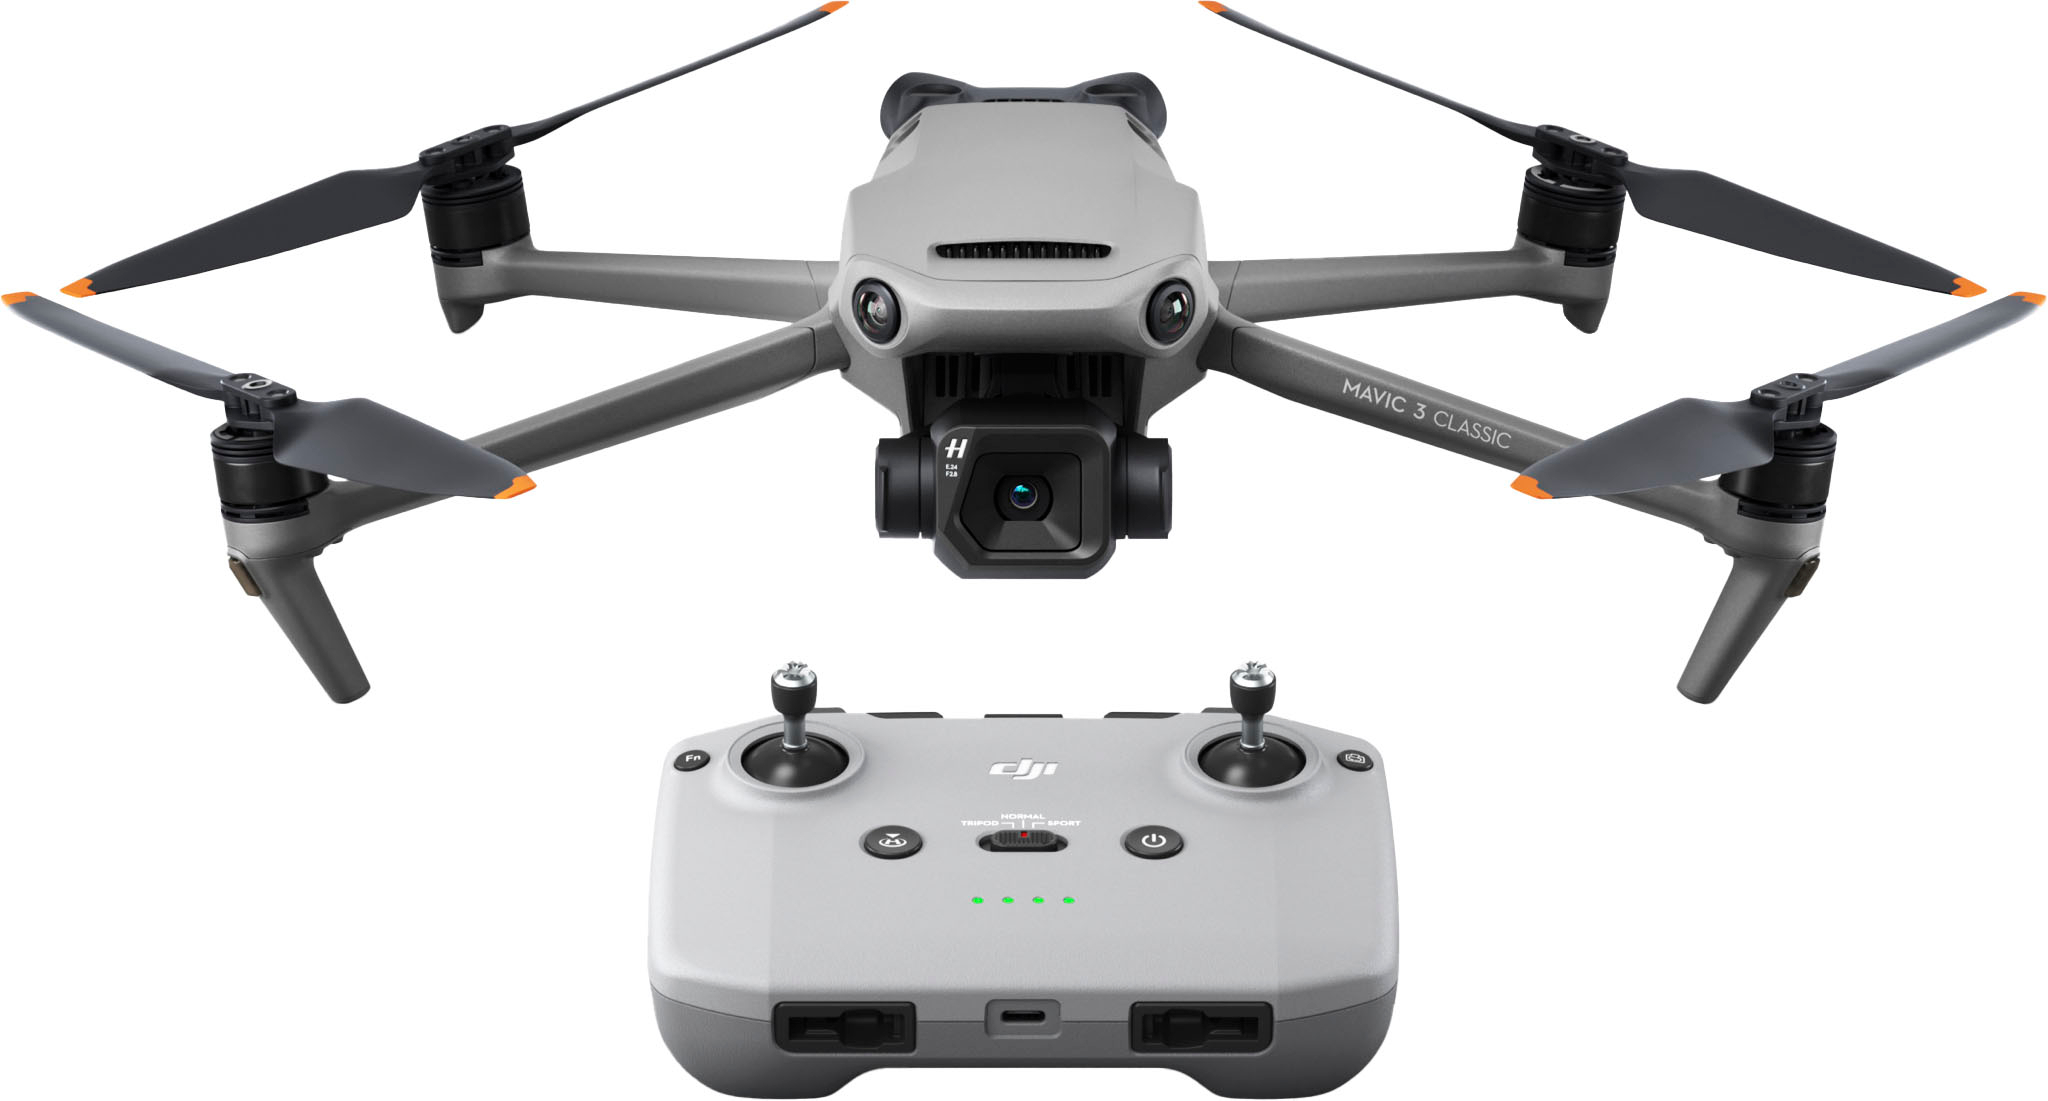 DJI - Mavic 3 Classic Drone and Remote Control - Gray